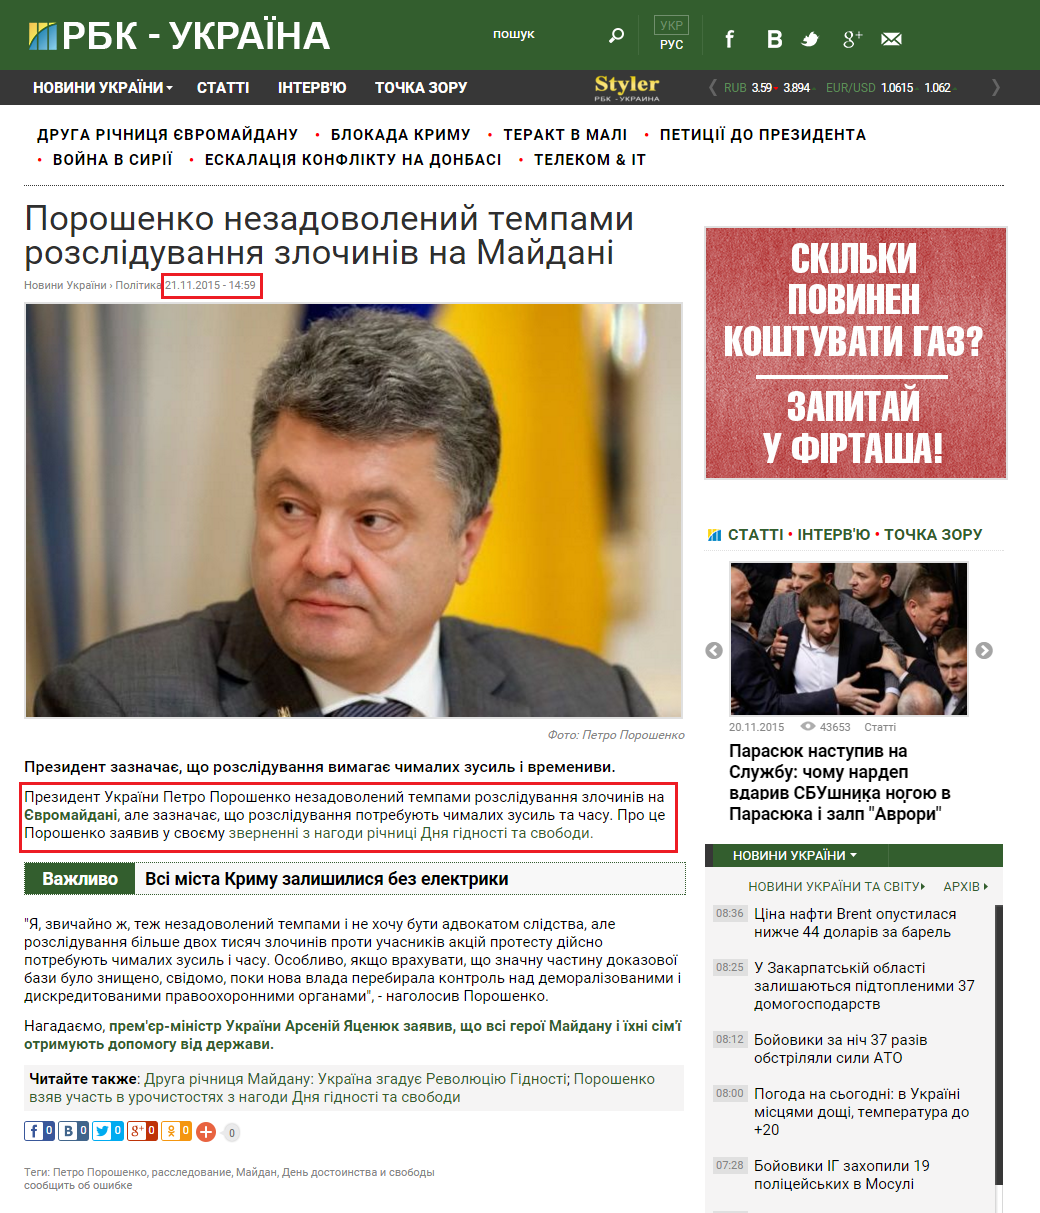 http://www.rbc.ua/ukr/news/poroshenko-nedovolen-tempami-rassledovaniya-1448109759.html